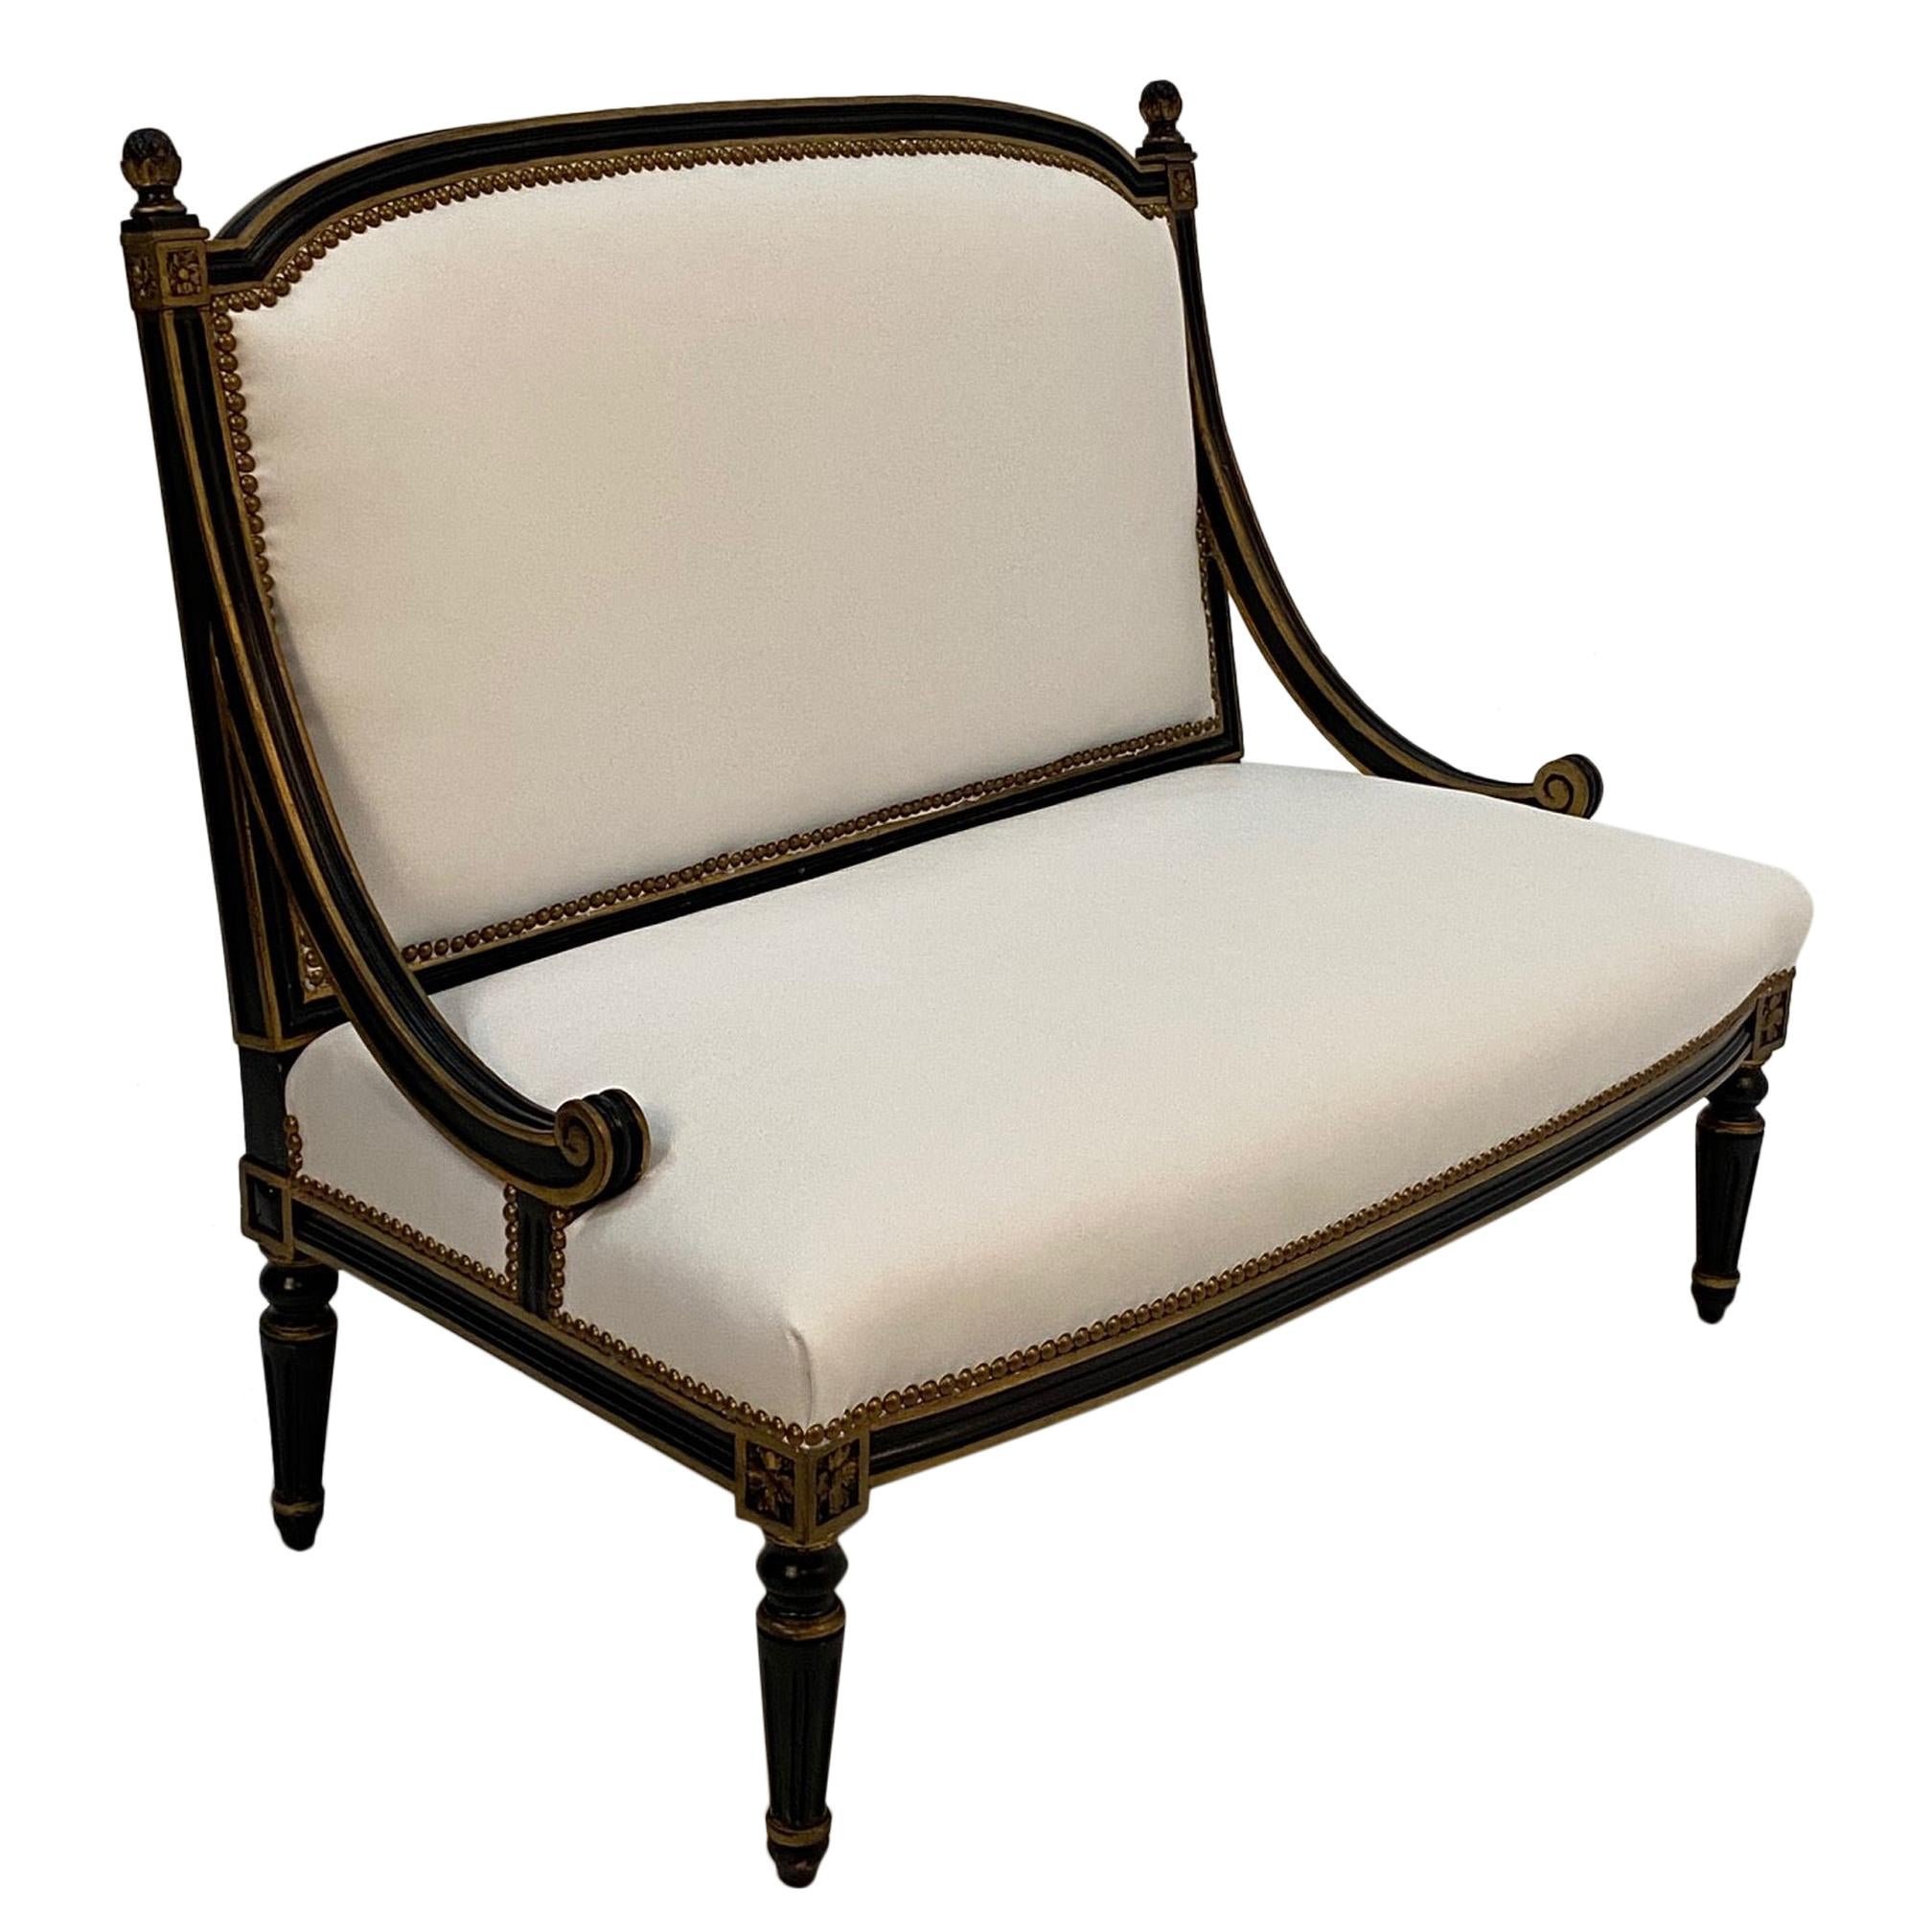 Glamorous Hollywood Regency Ebonized Gilded Settee with White Leather Upholstery